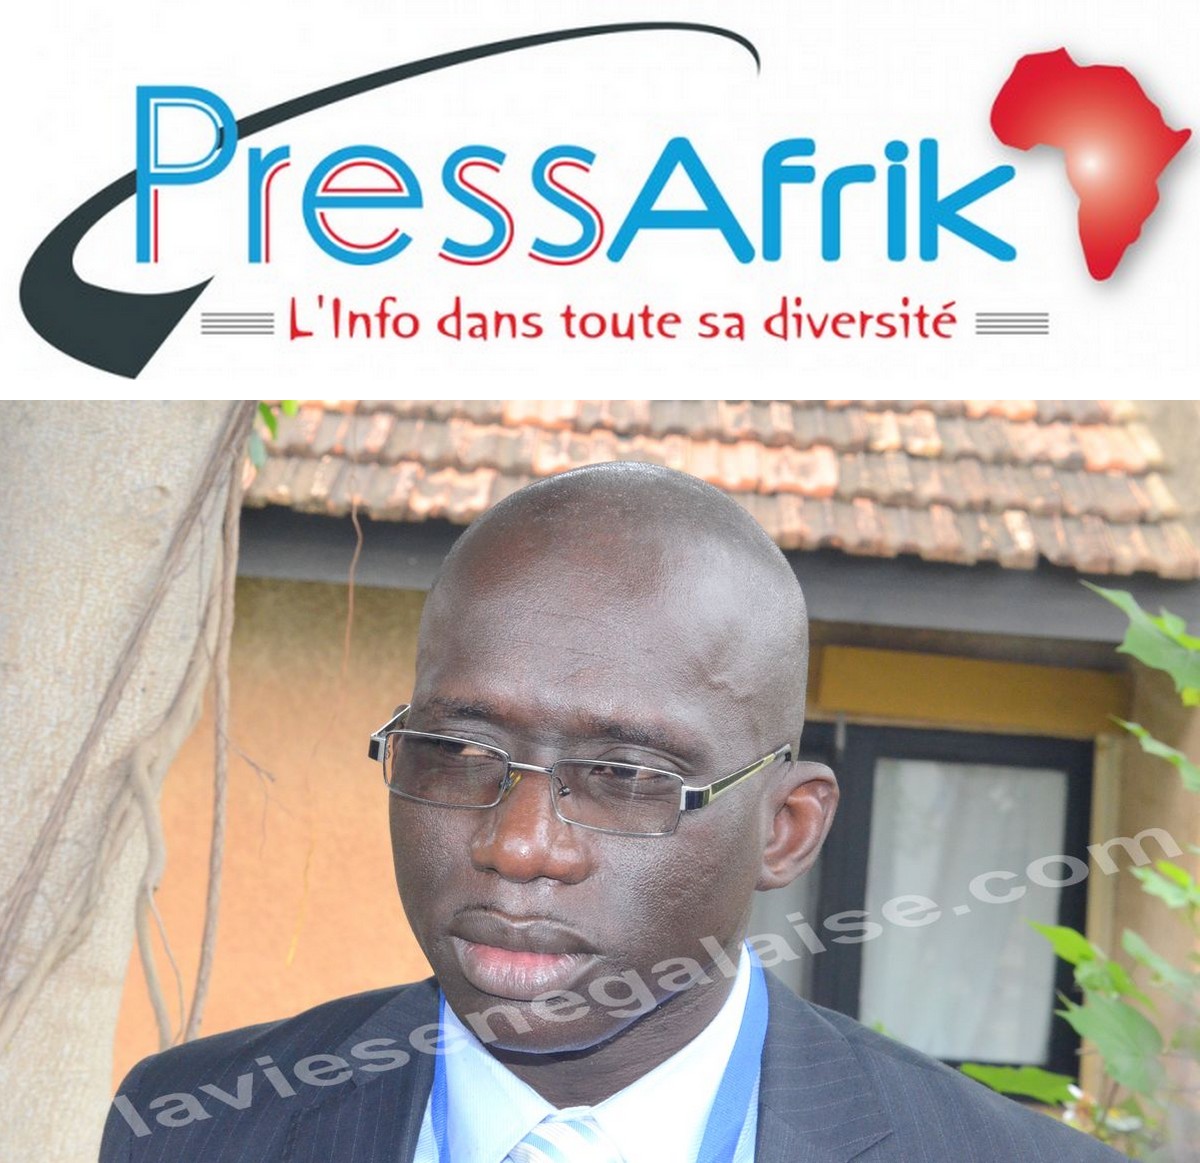 Le Journal en ligne PressAfrik annonce une plainte suite a un fakenews sur le coronavirus - Ibrahima Lissa Faye